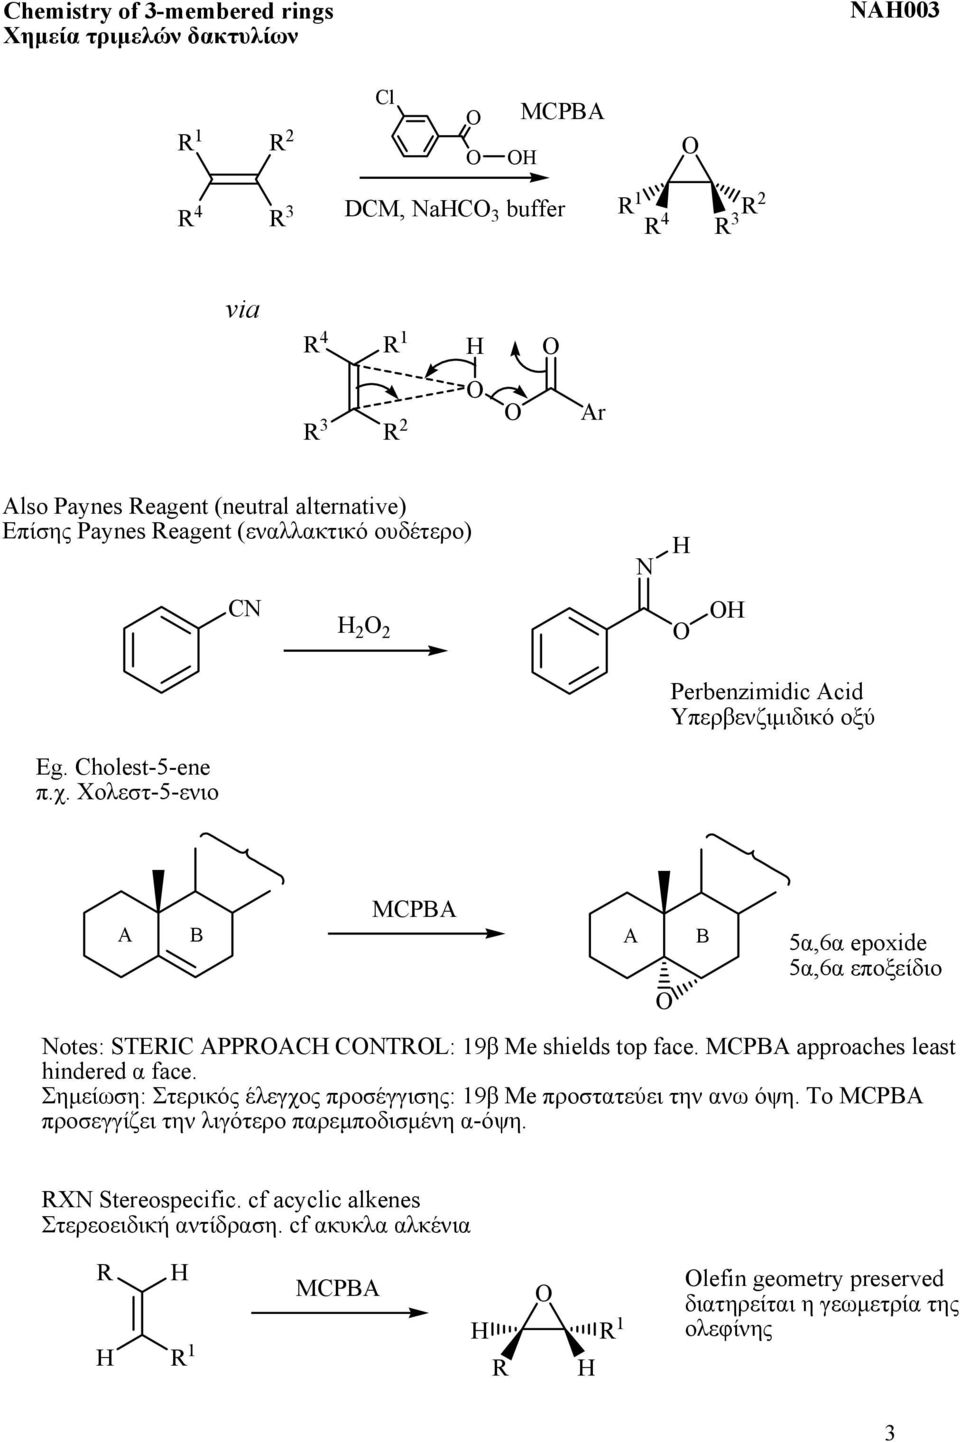 Χολεστ-5-ενιο C 2 2 Perbenzimidic Acid Υπερβενζιμιδικό οξύ A B MCPBA A B 5α,6α epoxide 5α,6α εποξείδιο otes: TEIC APPAC CTL: 19β shields top face.